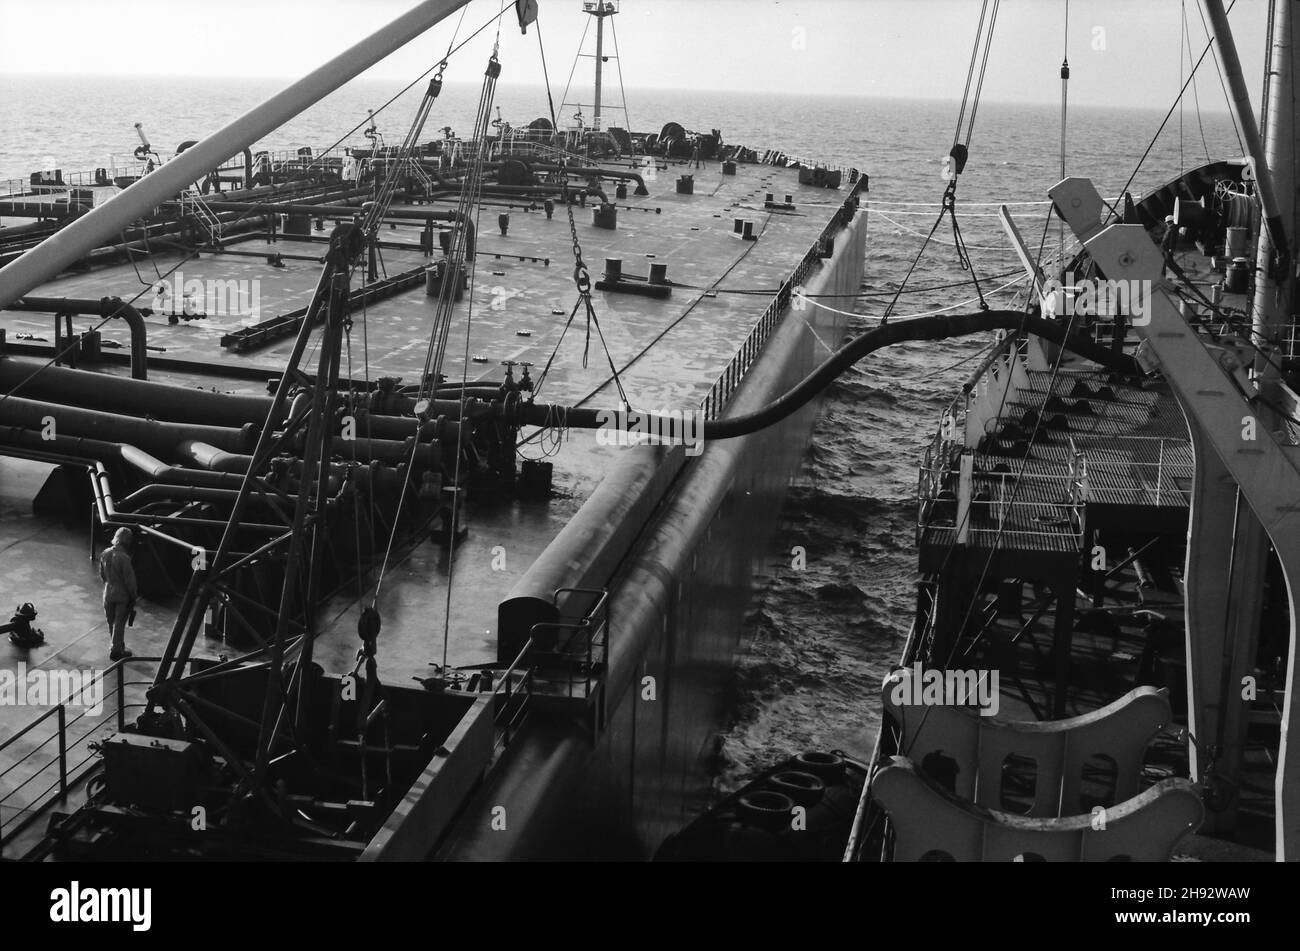 SS esso York (a destra) illuminante superpetroliera in Lyme Bay, Inghilterra meridionale. Un'operazione per rimuovere parte del carico della nave più grande in modo che possa accedere ai porti in cui non poteva andare completamente caricato. Foto scattata 1975/76 Foto Stock